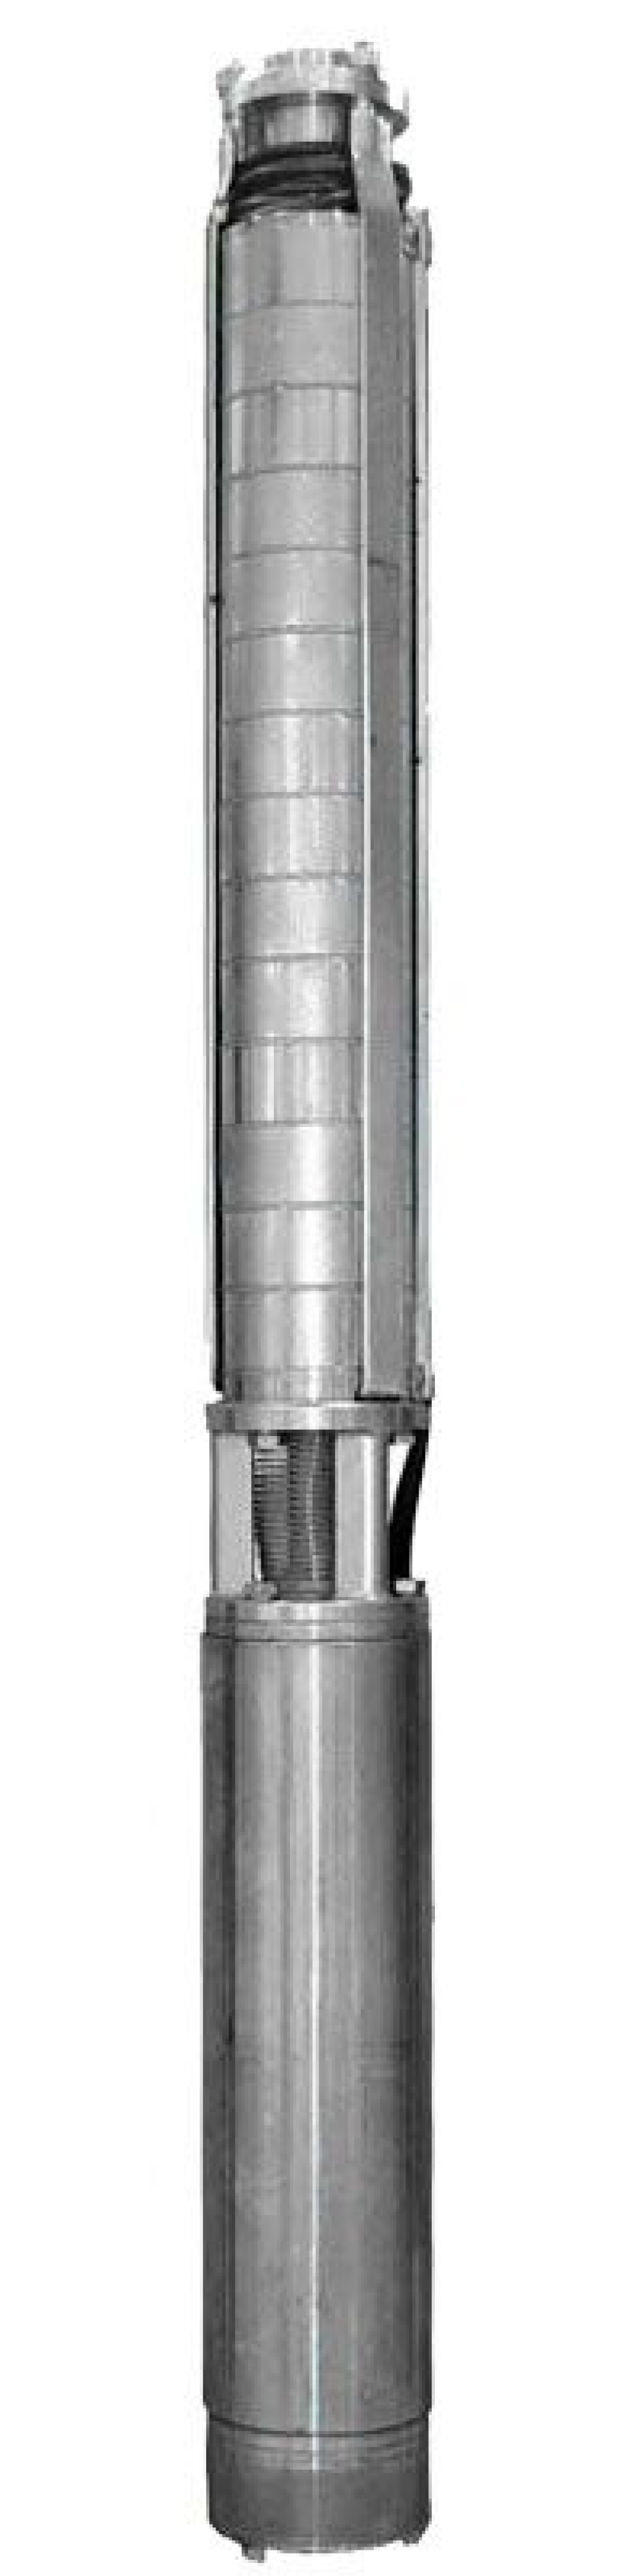 Насос скважинный Ливнынасос ЭЦВ 4-10-95 центробежный, производительность 10 м3/час, напор 95 м, мощность 5 кВт, напряжение трехфазной сети 380В